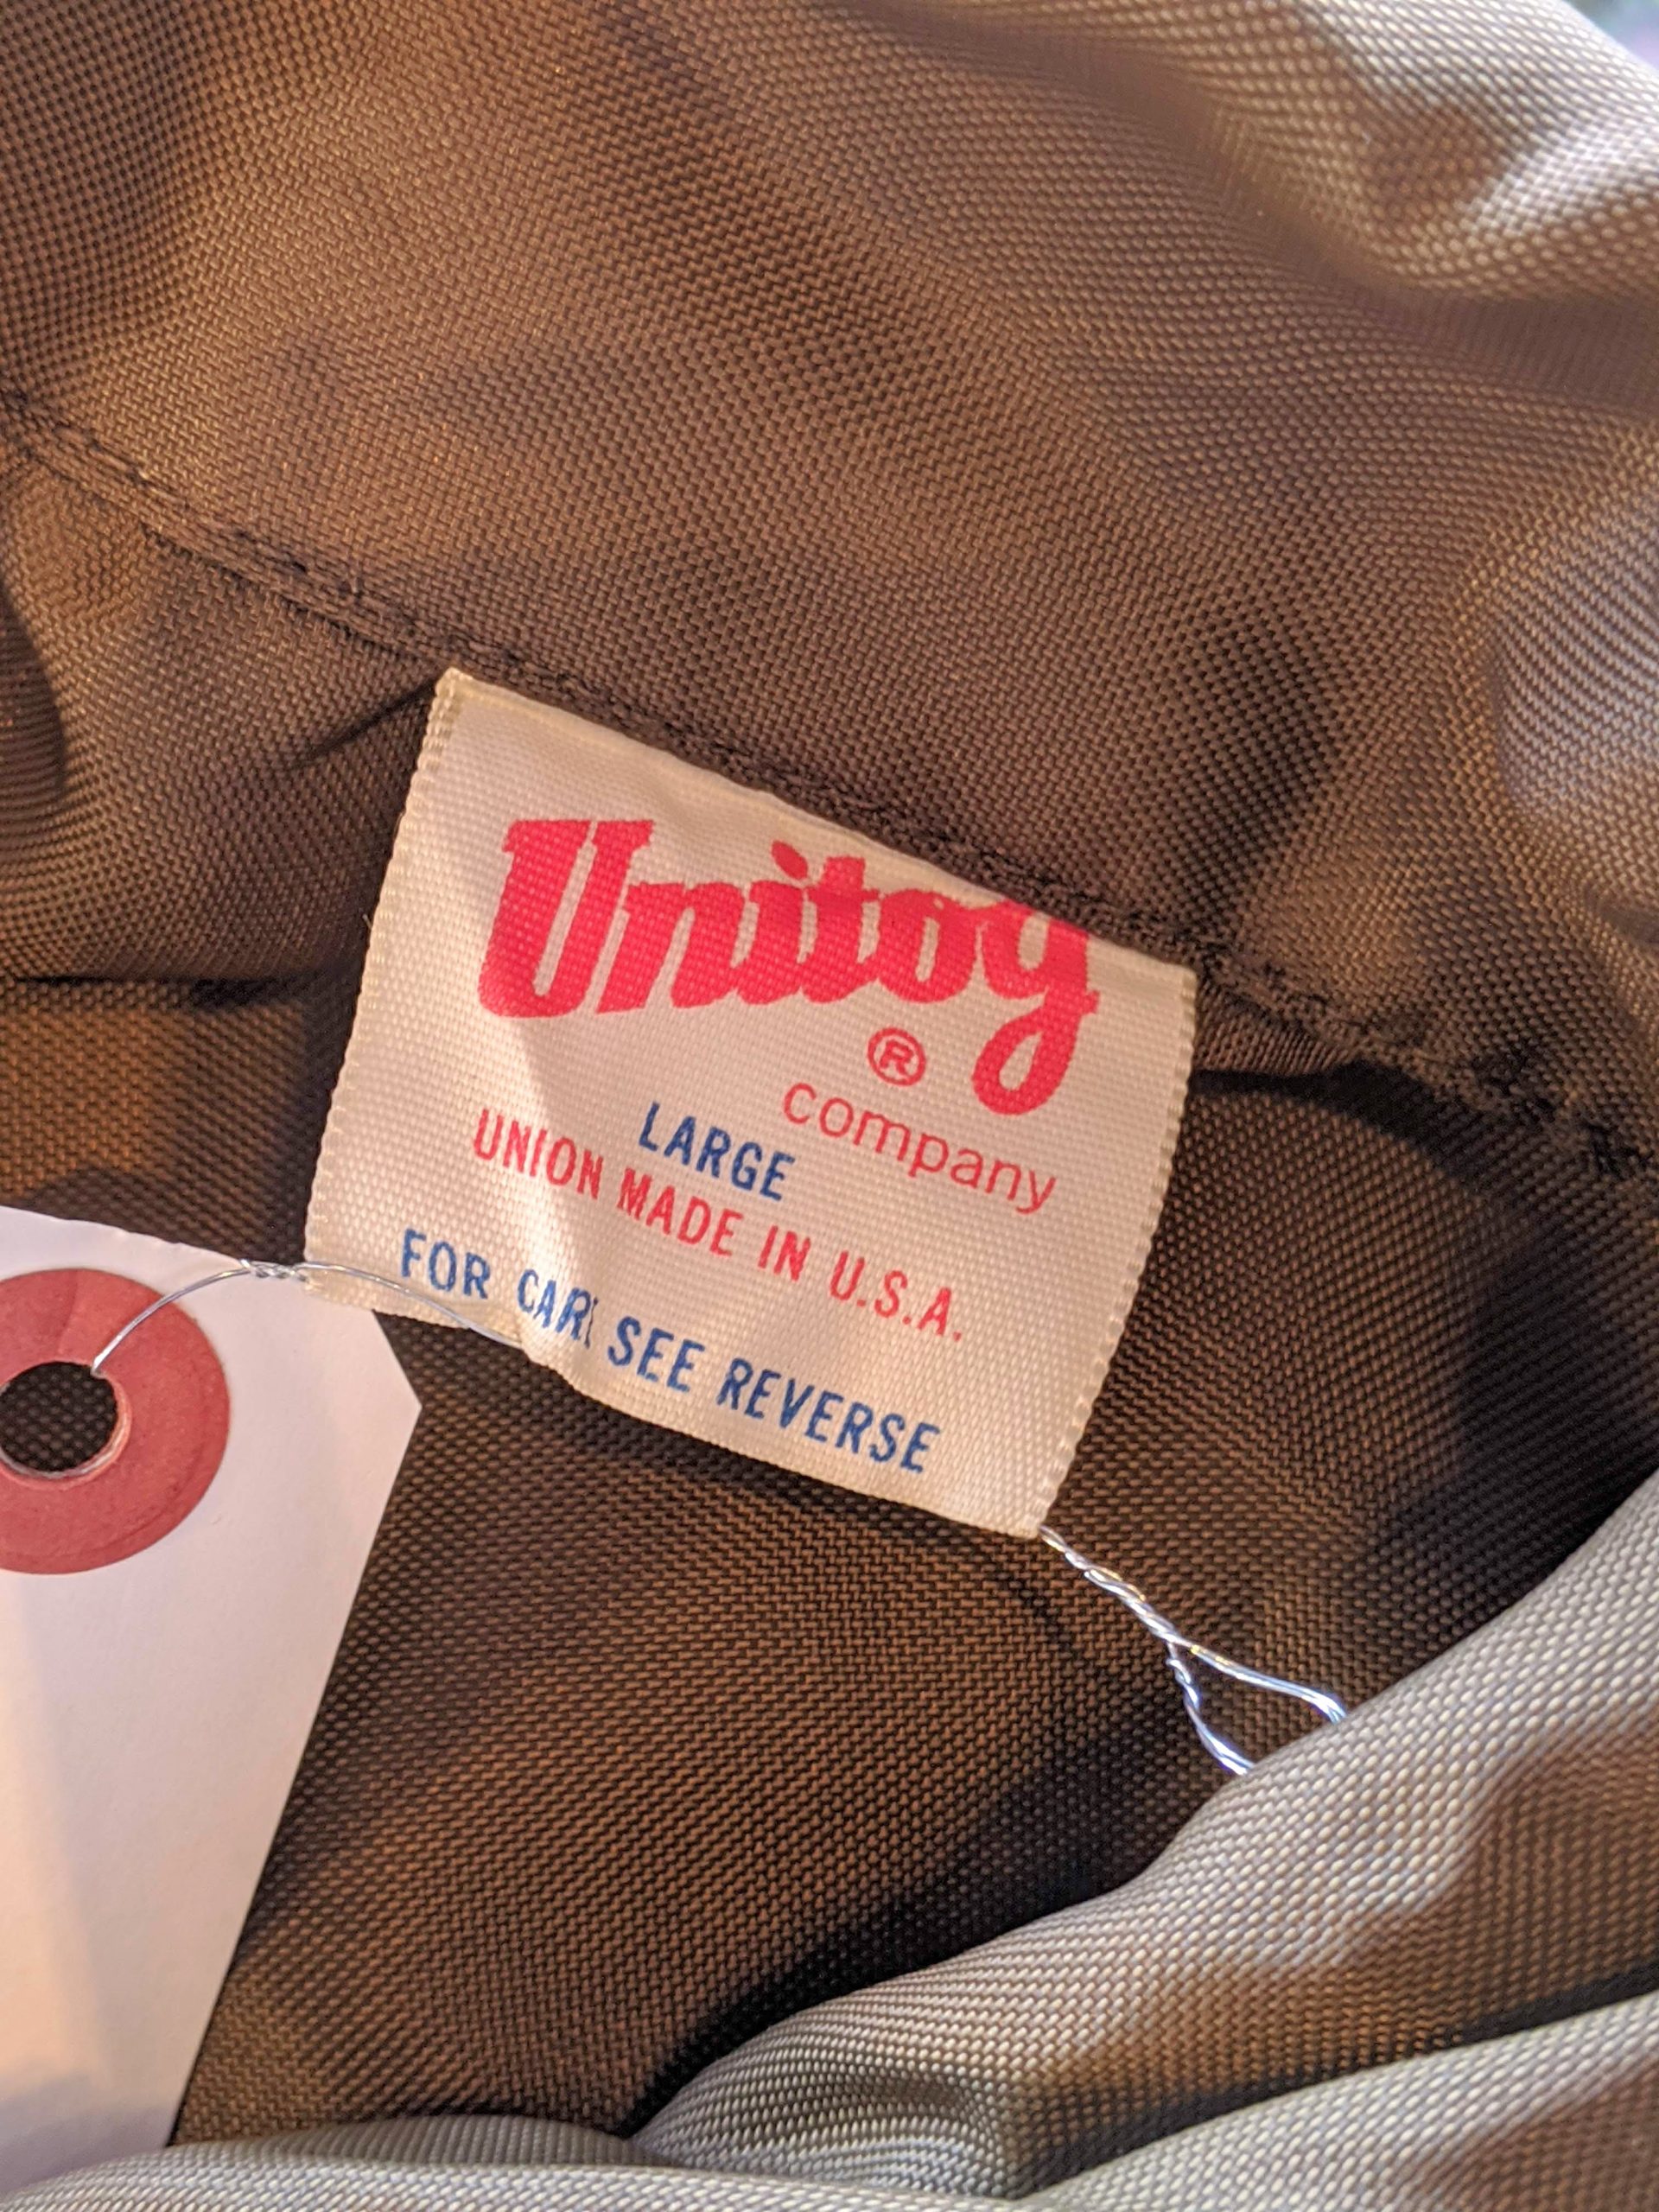 1970s USA Unitog Zip-up Nylon Jacket – ataco garage blog